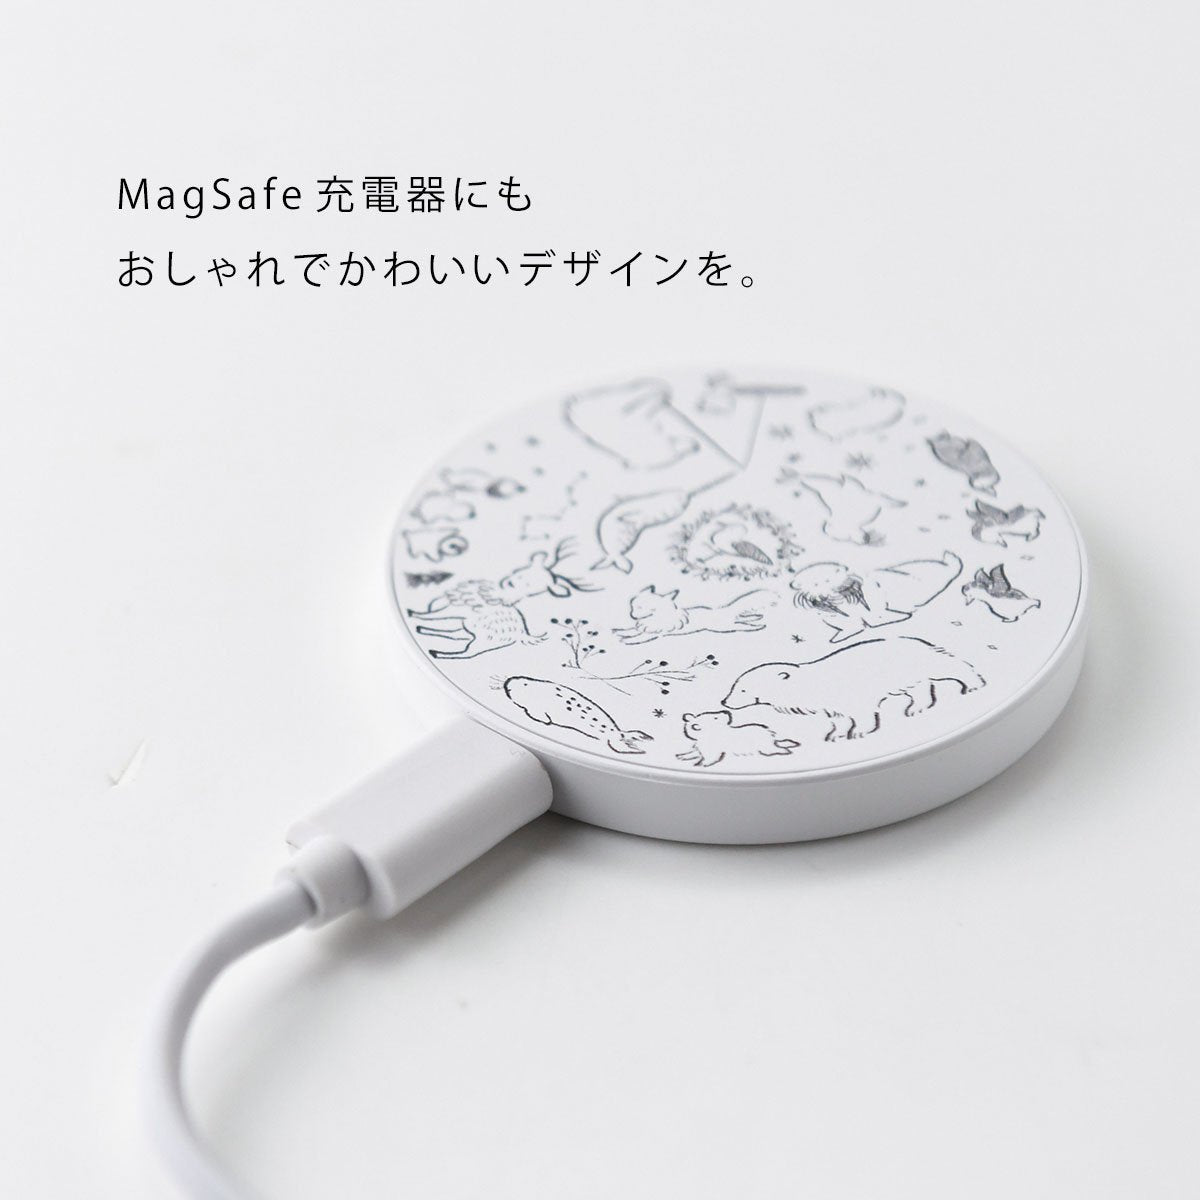 MagSafe 充電器 おしゃれ マグセーフ充電器 iPhone13 pro iPhone12 qi 充電器 かわいい 猫 ねこ